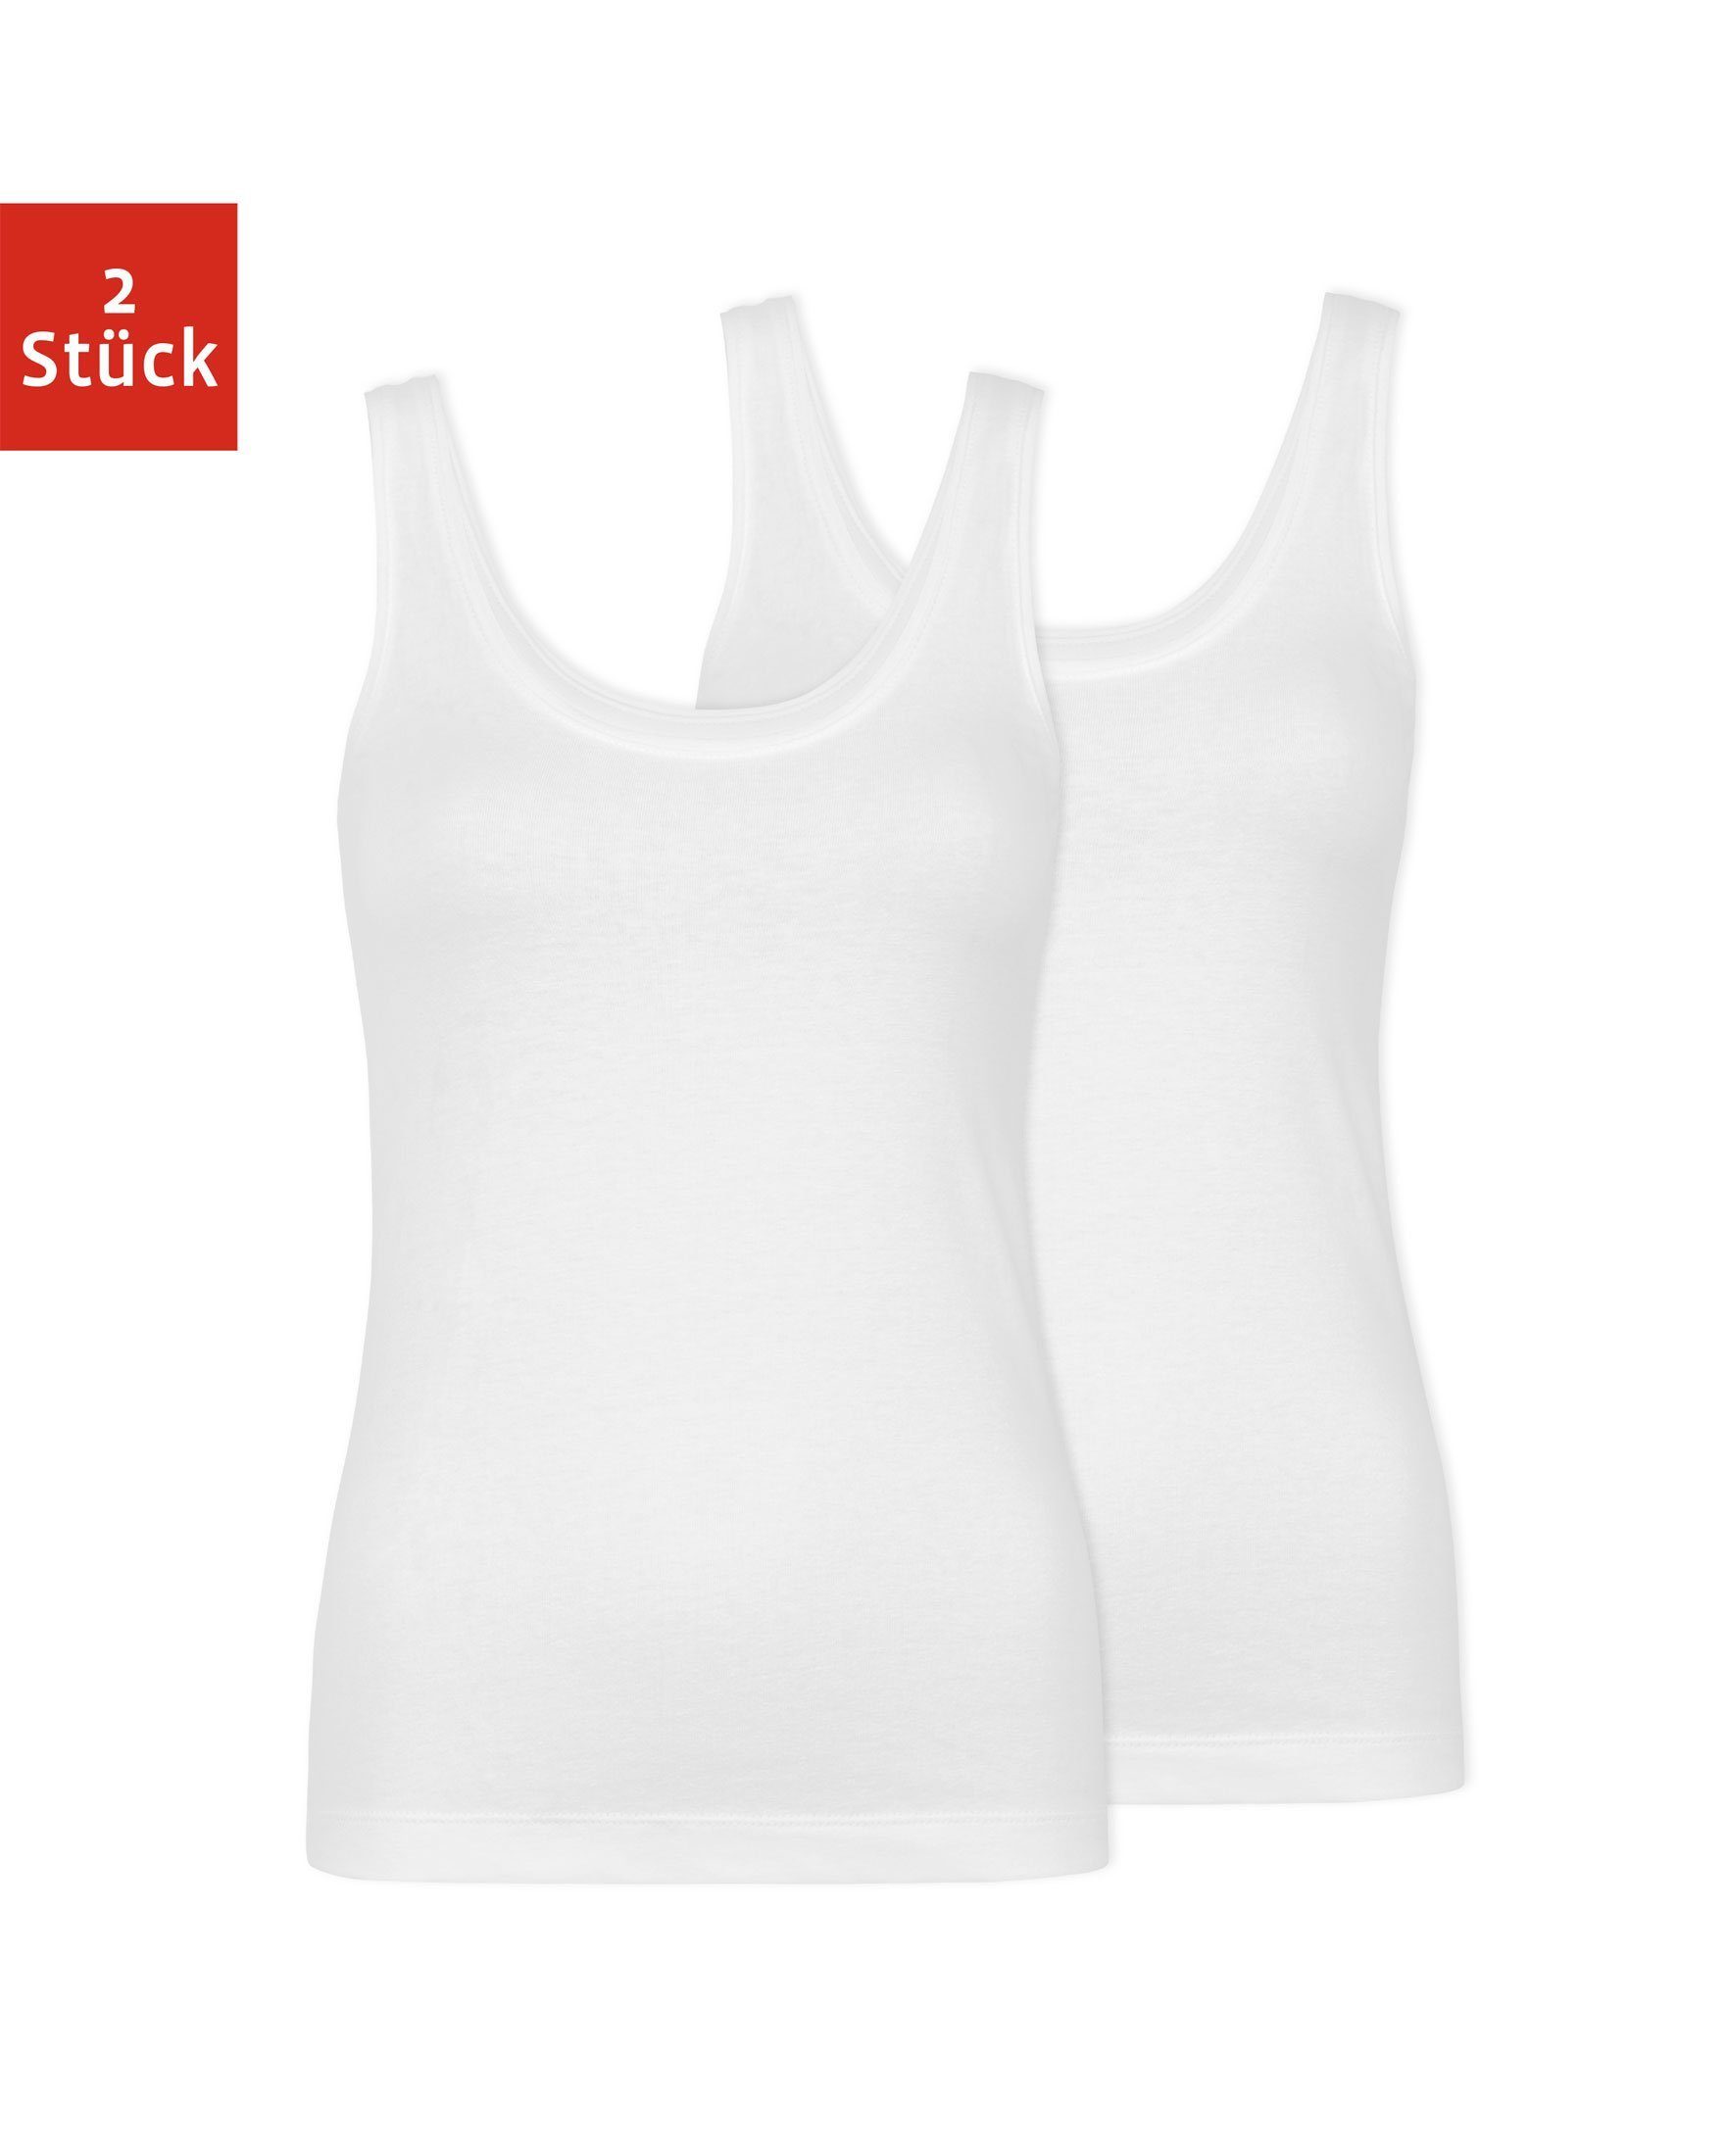 SNOCKS Tanktop Top mit breiten Trägern Damen (2-tlg) aus Bio-Baumwolle, bequem, perfektes Basic für jedes Outfit Weiß